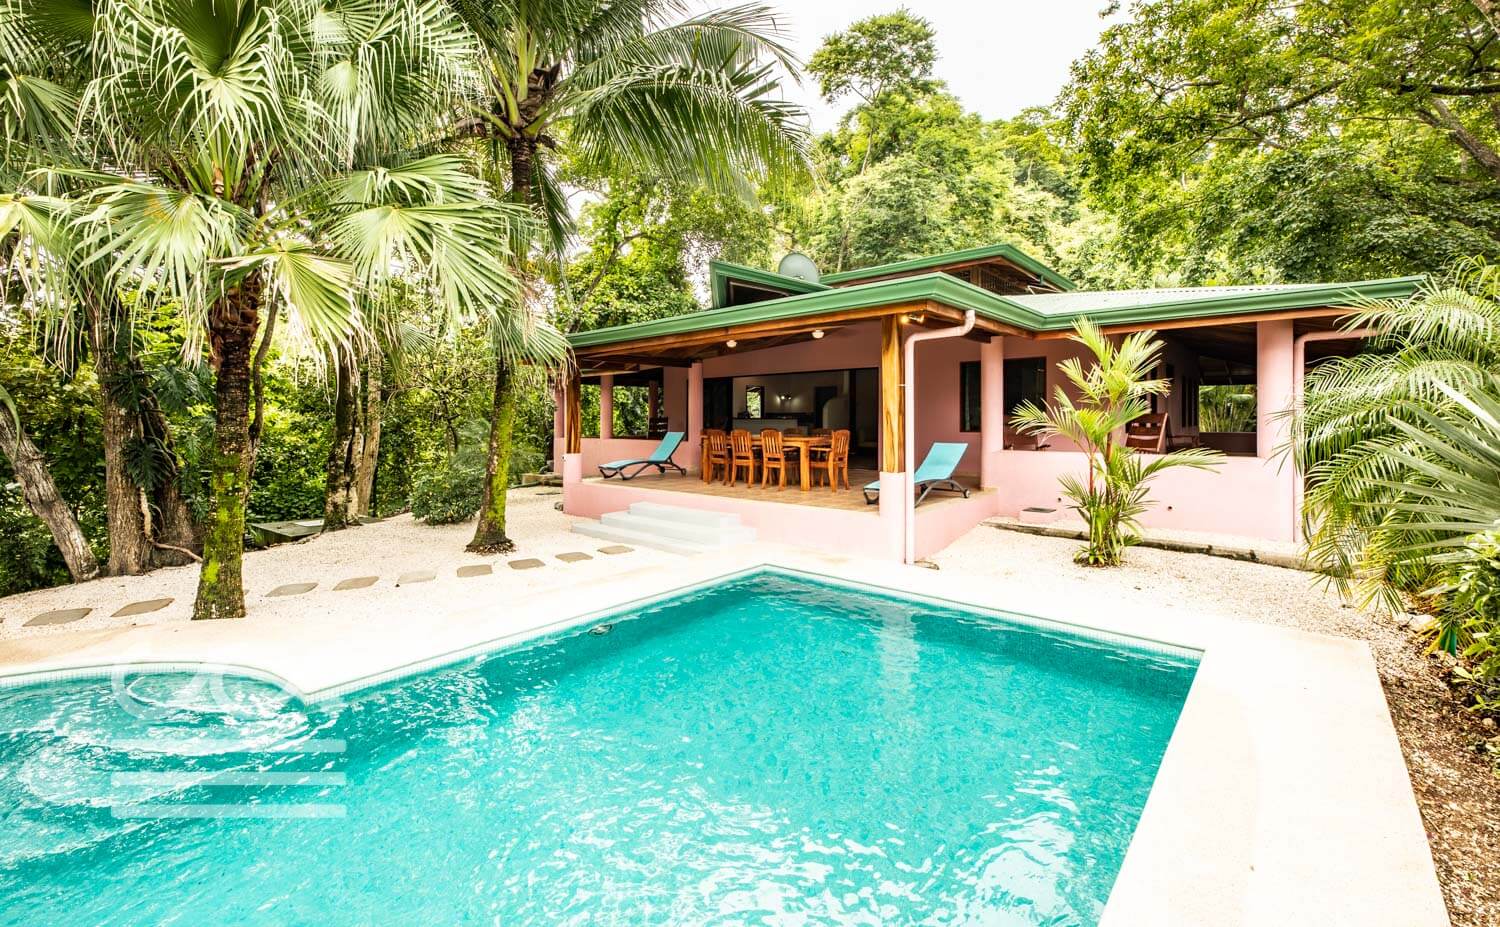 Casa-Nadine-Wanderlust-Realty-Real-Estate-Retals-Nosara-Costa-Rica-2.jpg